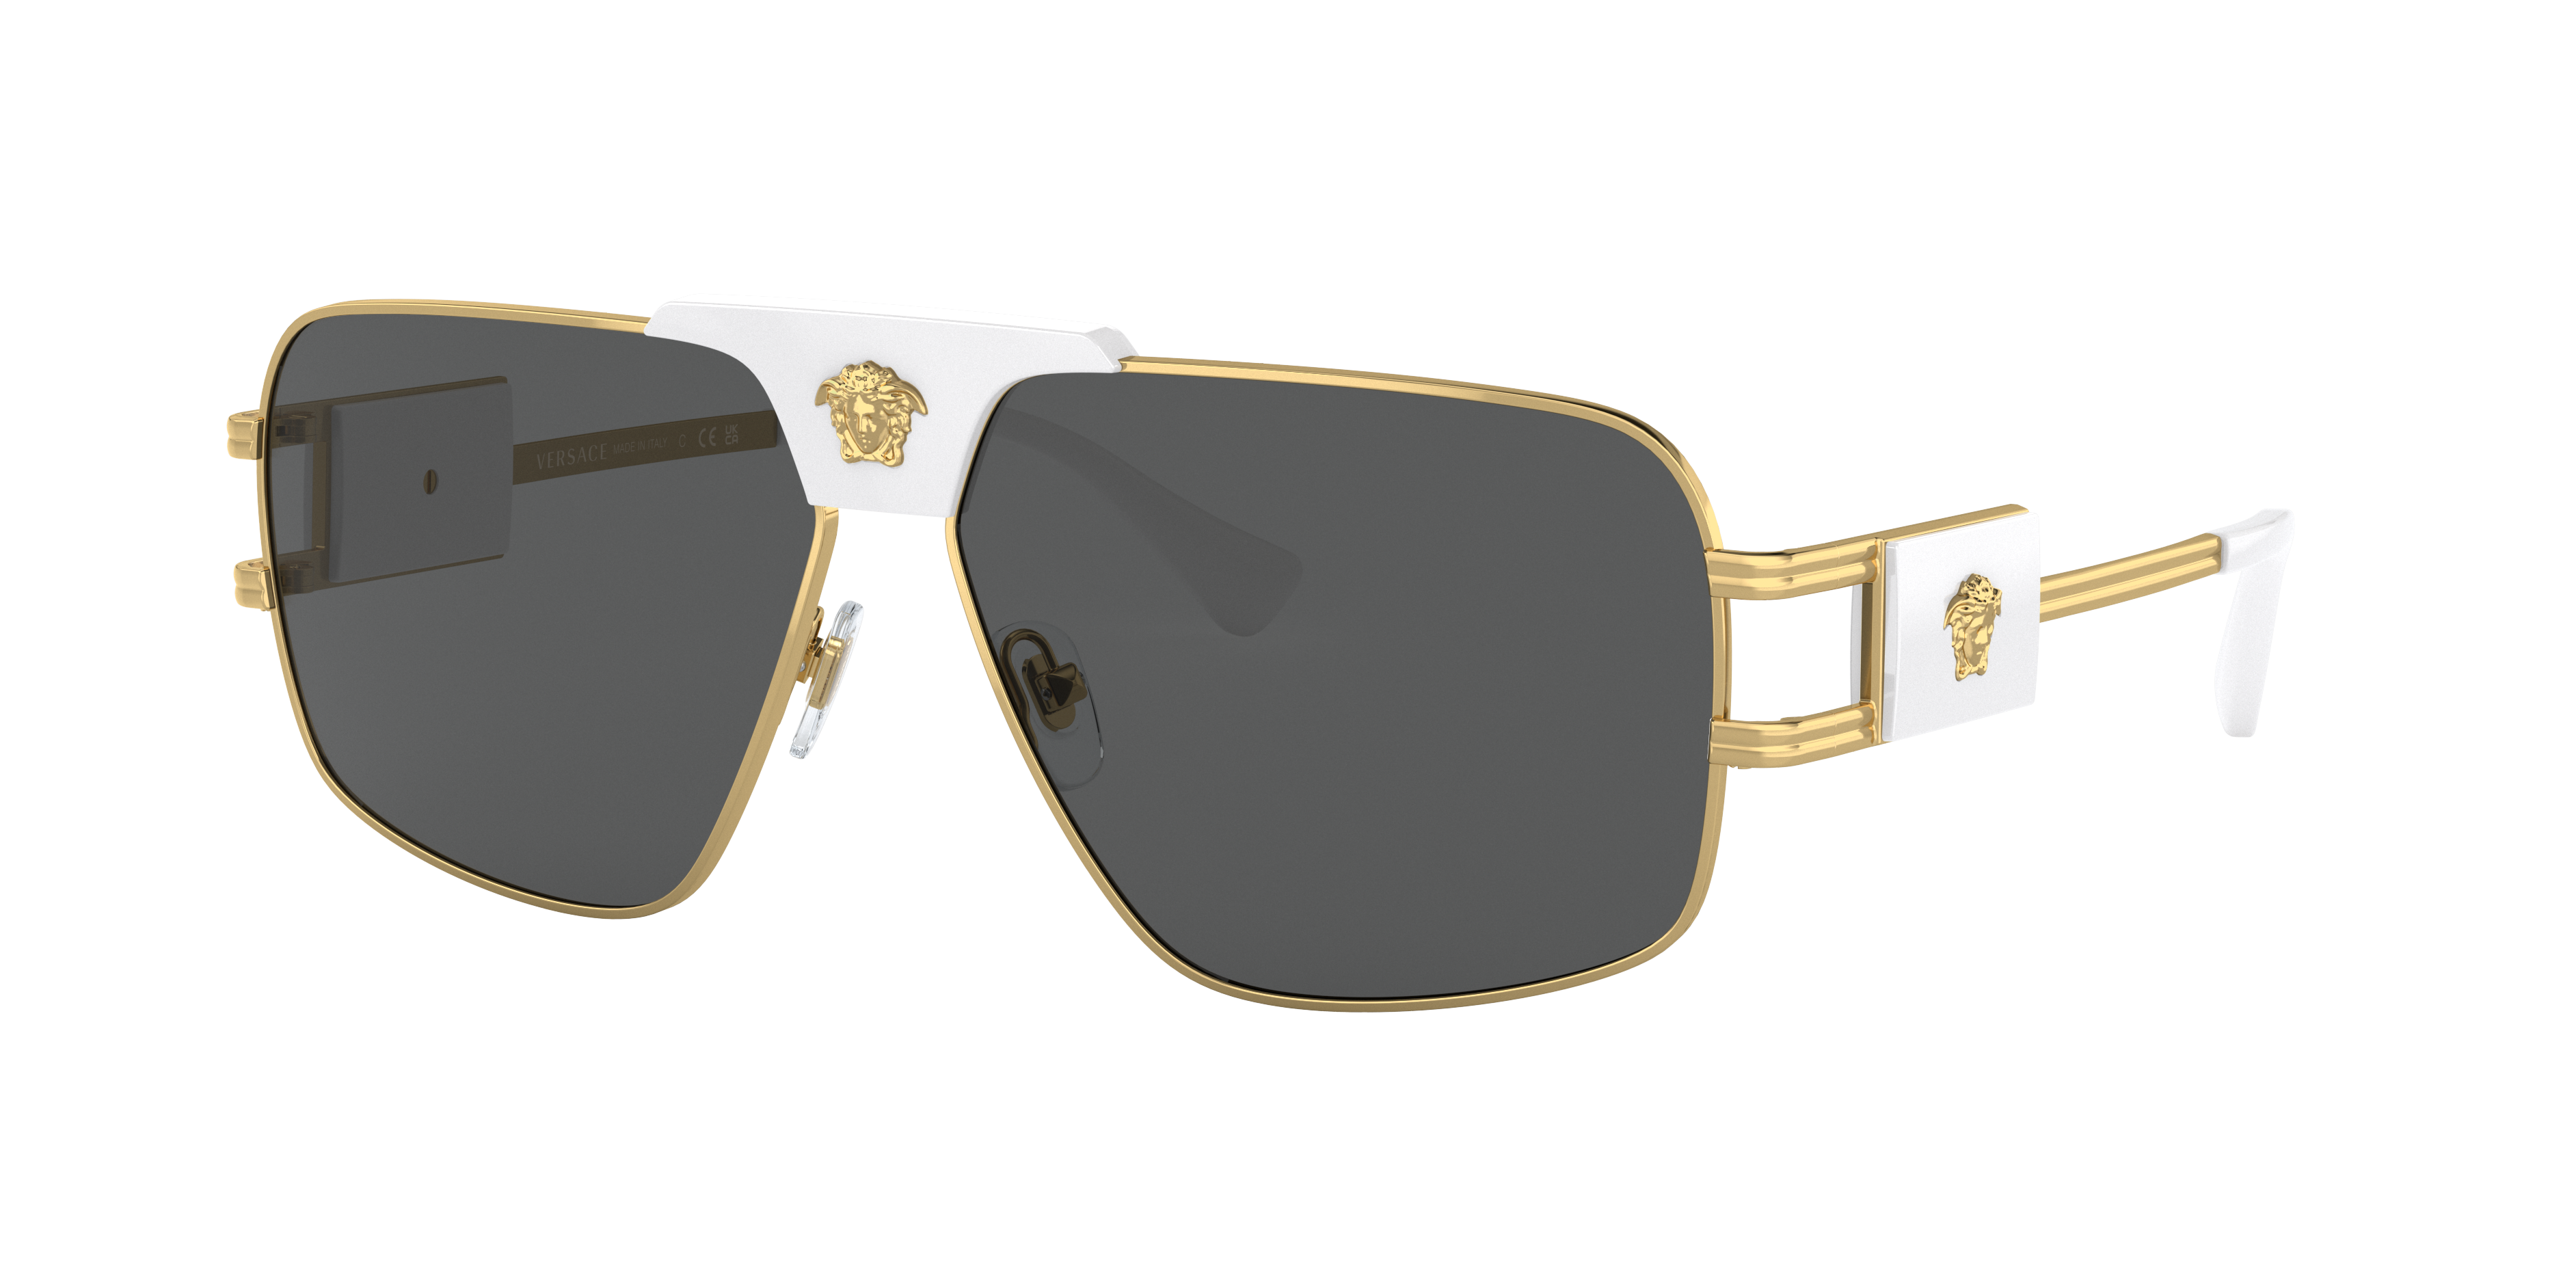 VERSACE VE2251 Gold - Men Luxury Sunglasses, Dark Grey Lens